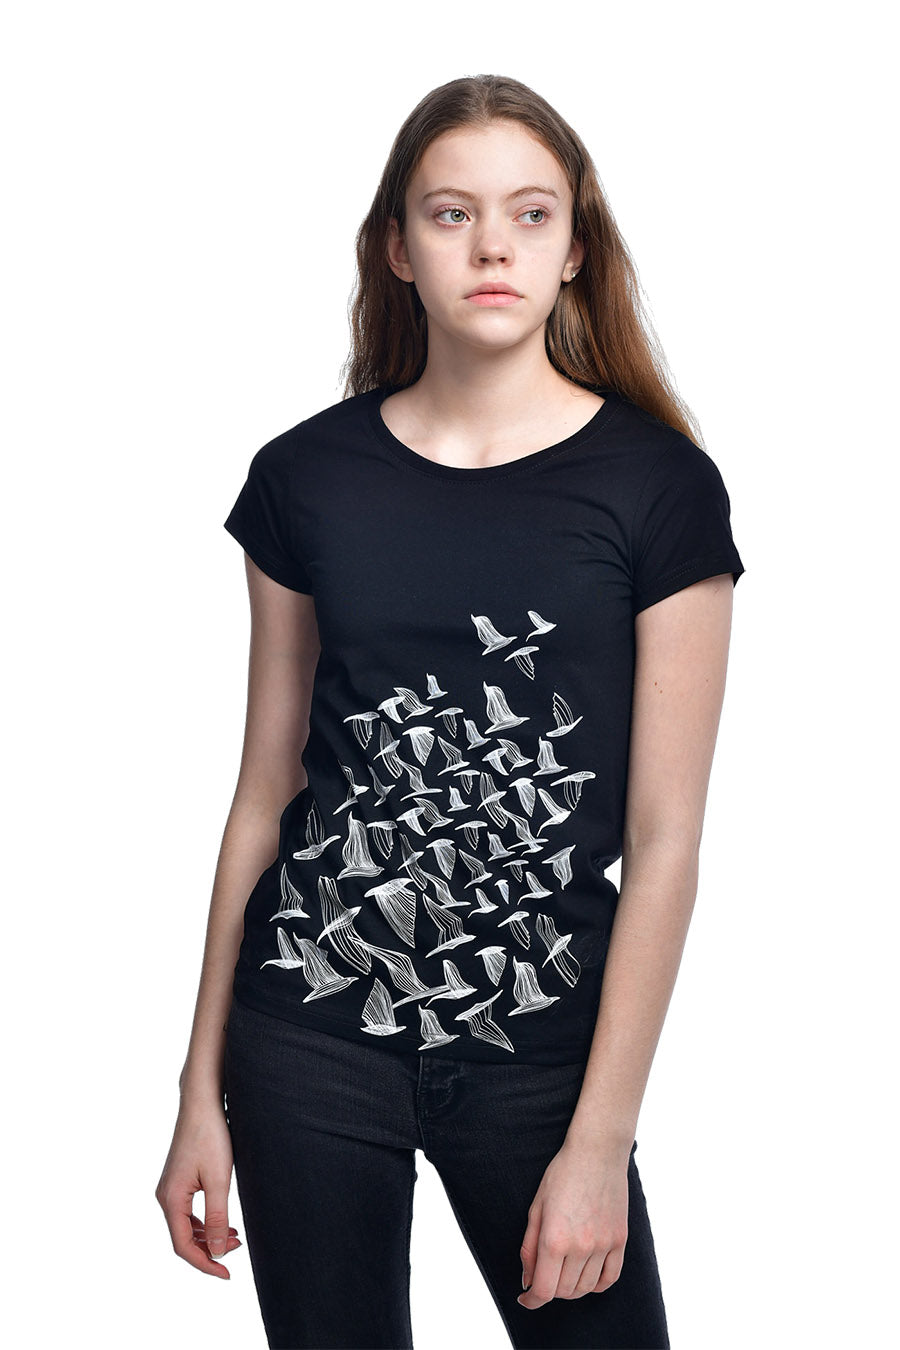 Lilit-Sarkisian-Birds-Black-T-shirt